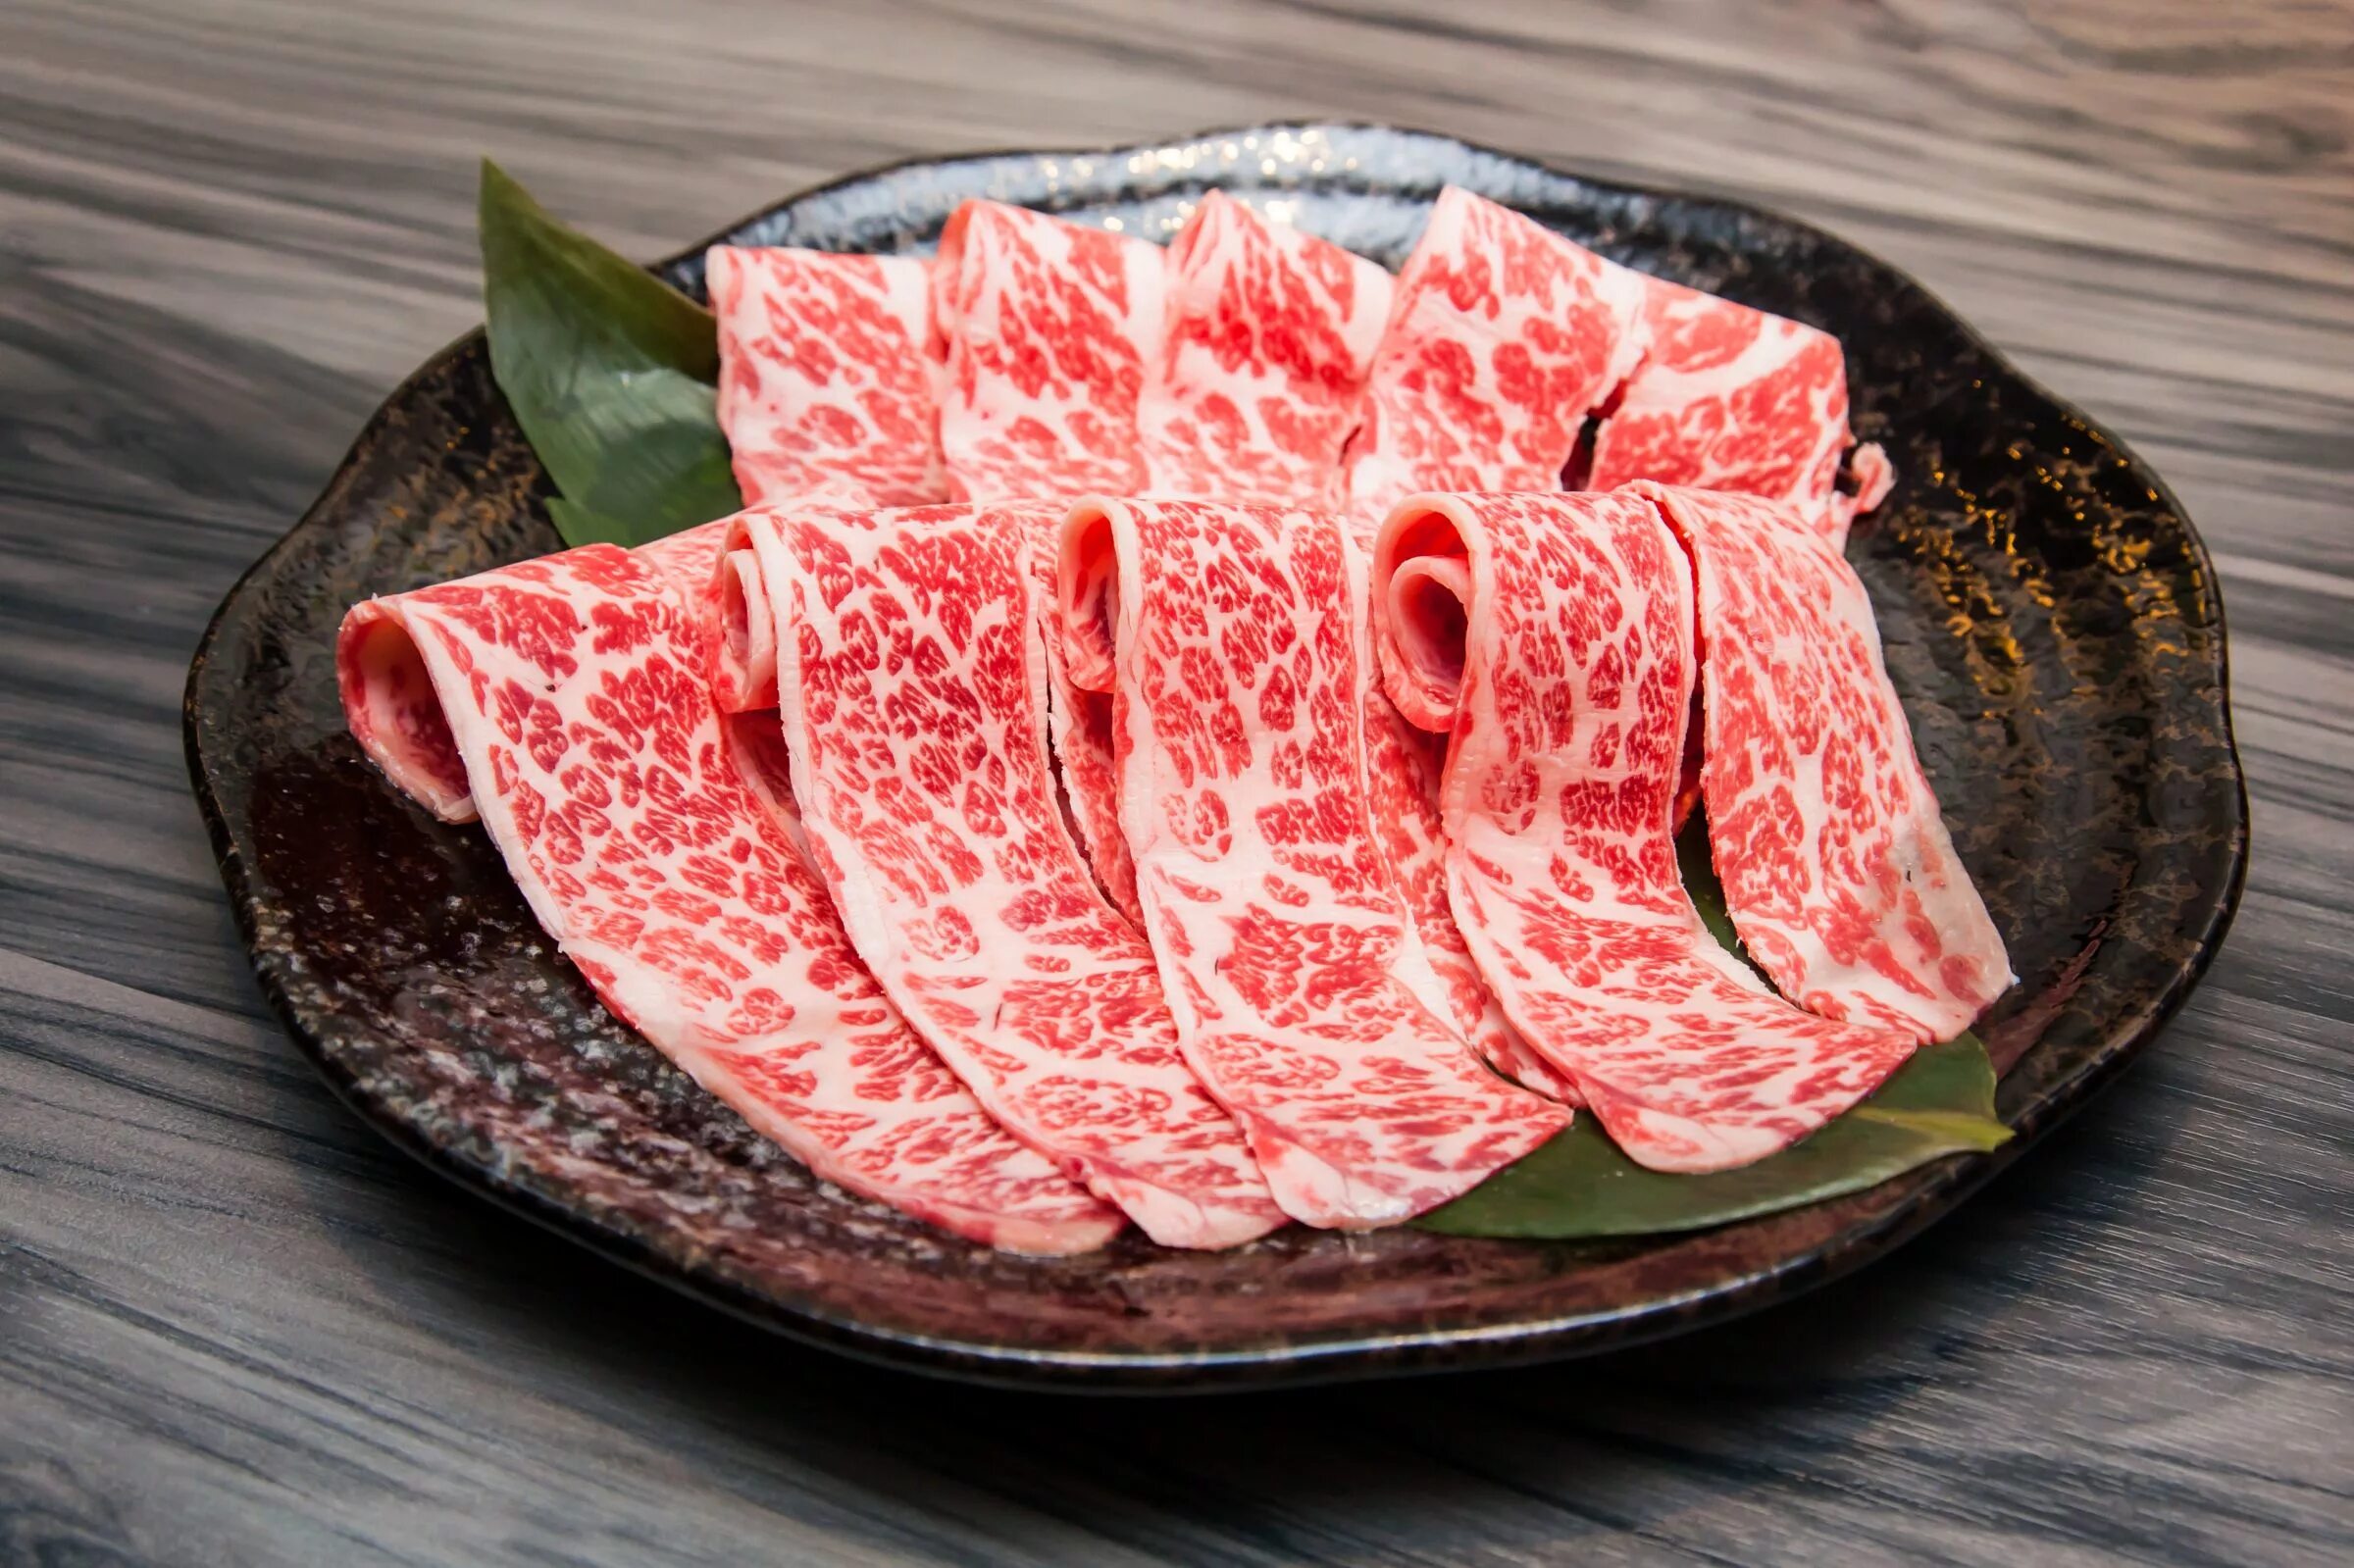 Японское мраморное мясо Вагю. Рибай Вагю. Вагю Кобе. Мраморная говядина Вагю. Вагю что это